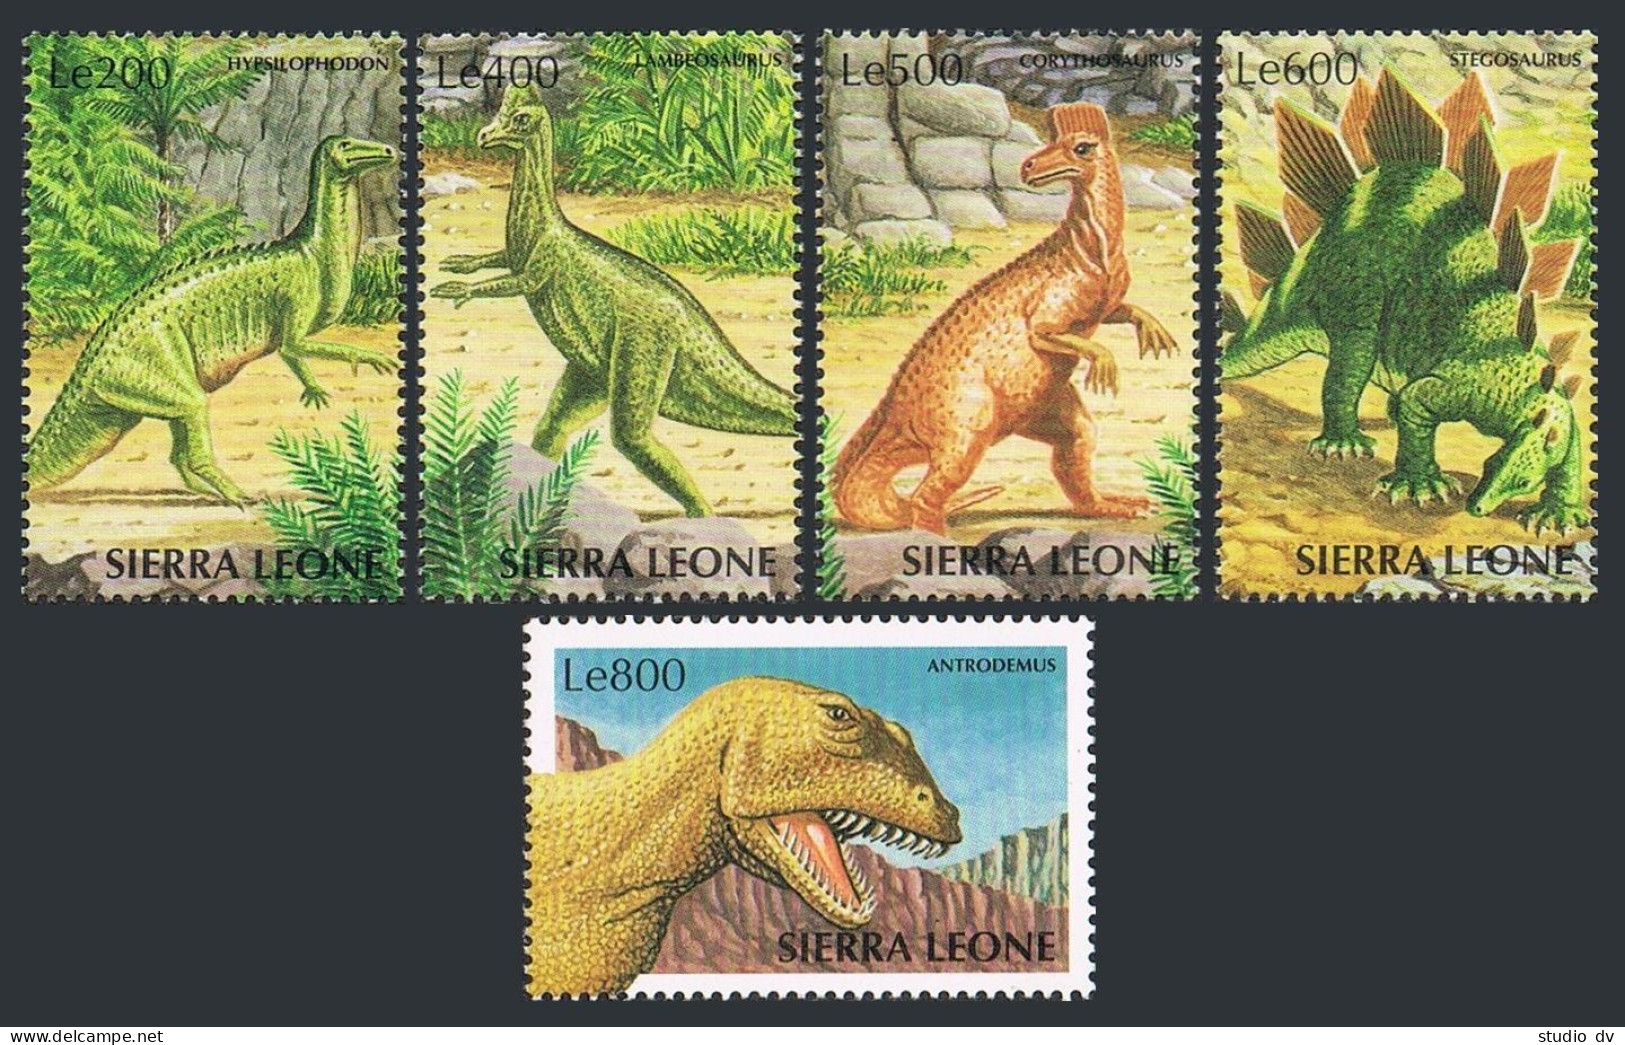 Sierra Leone 2108-2112,MNH. Dinosaurs,1998. - Sierra Leone (1961-...)